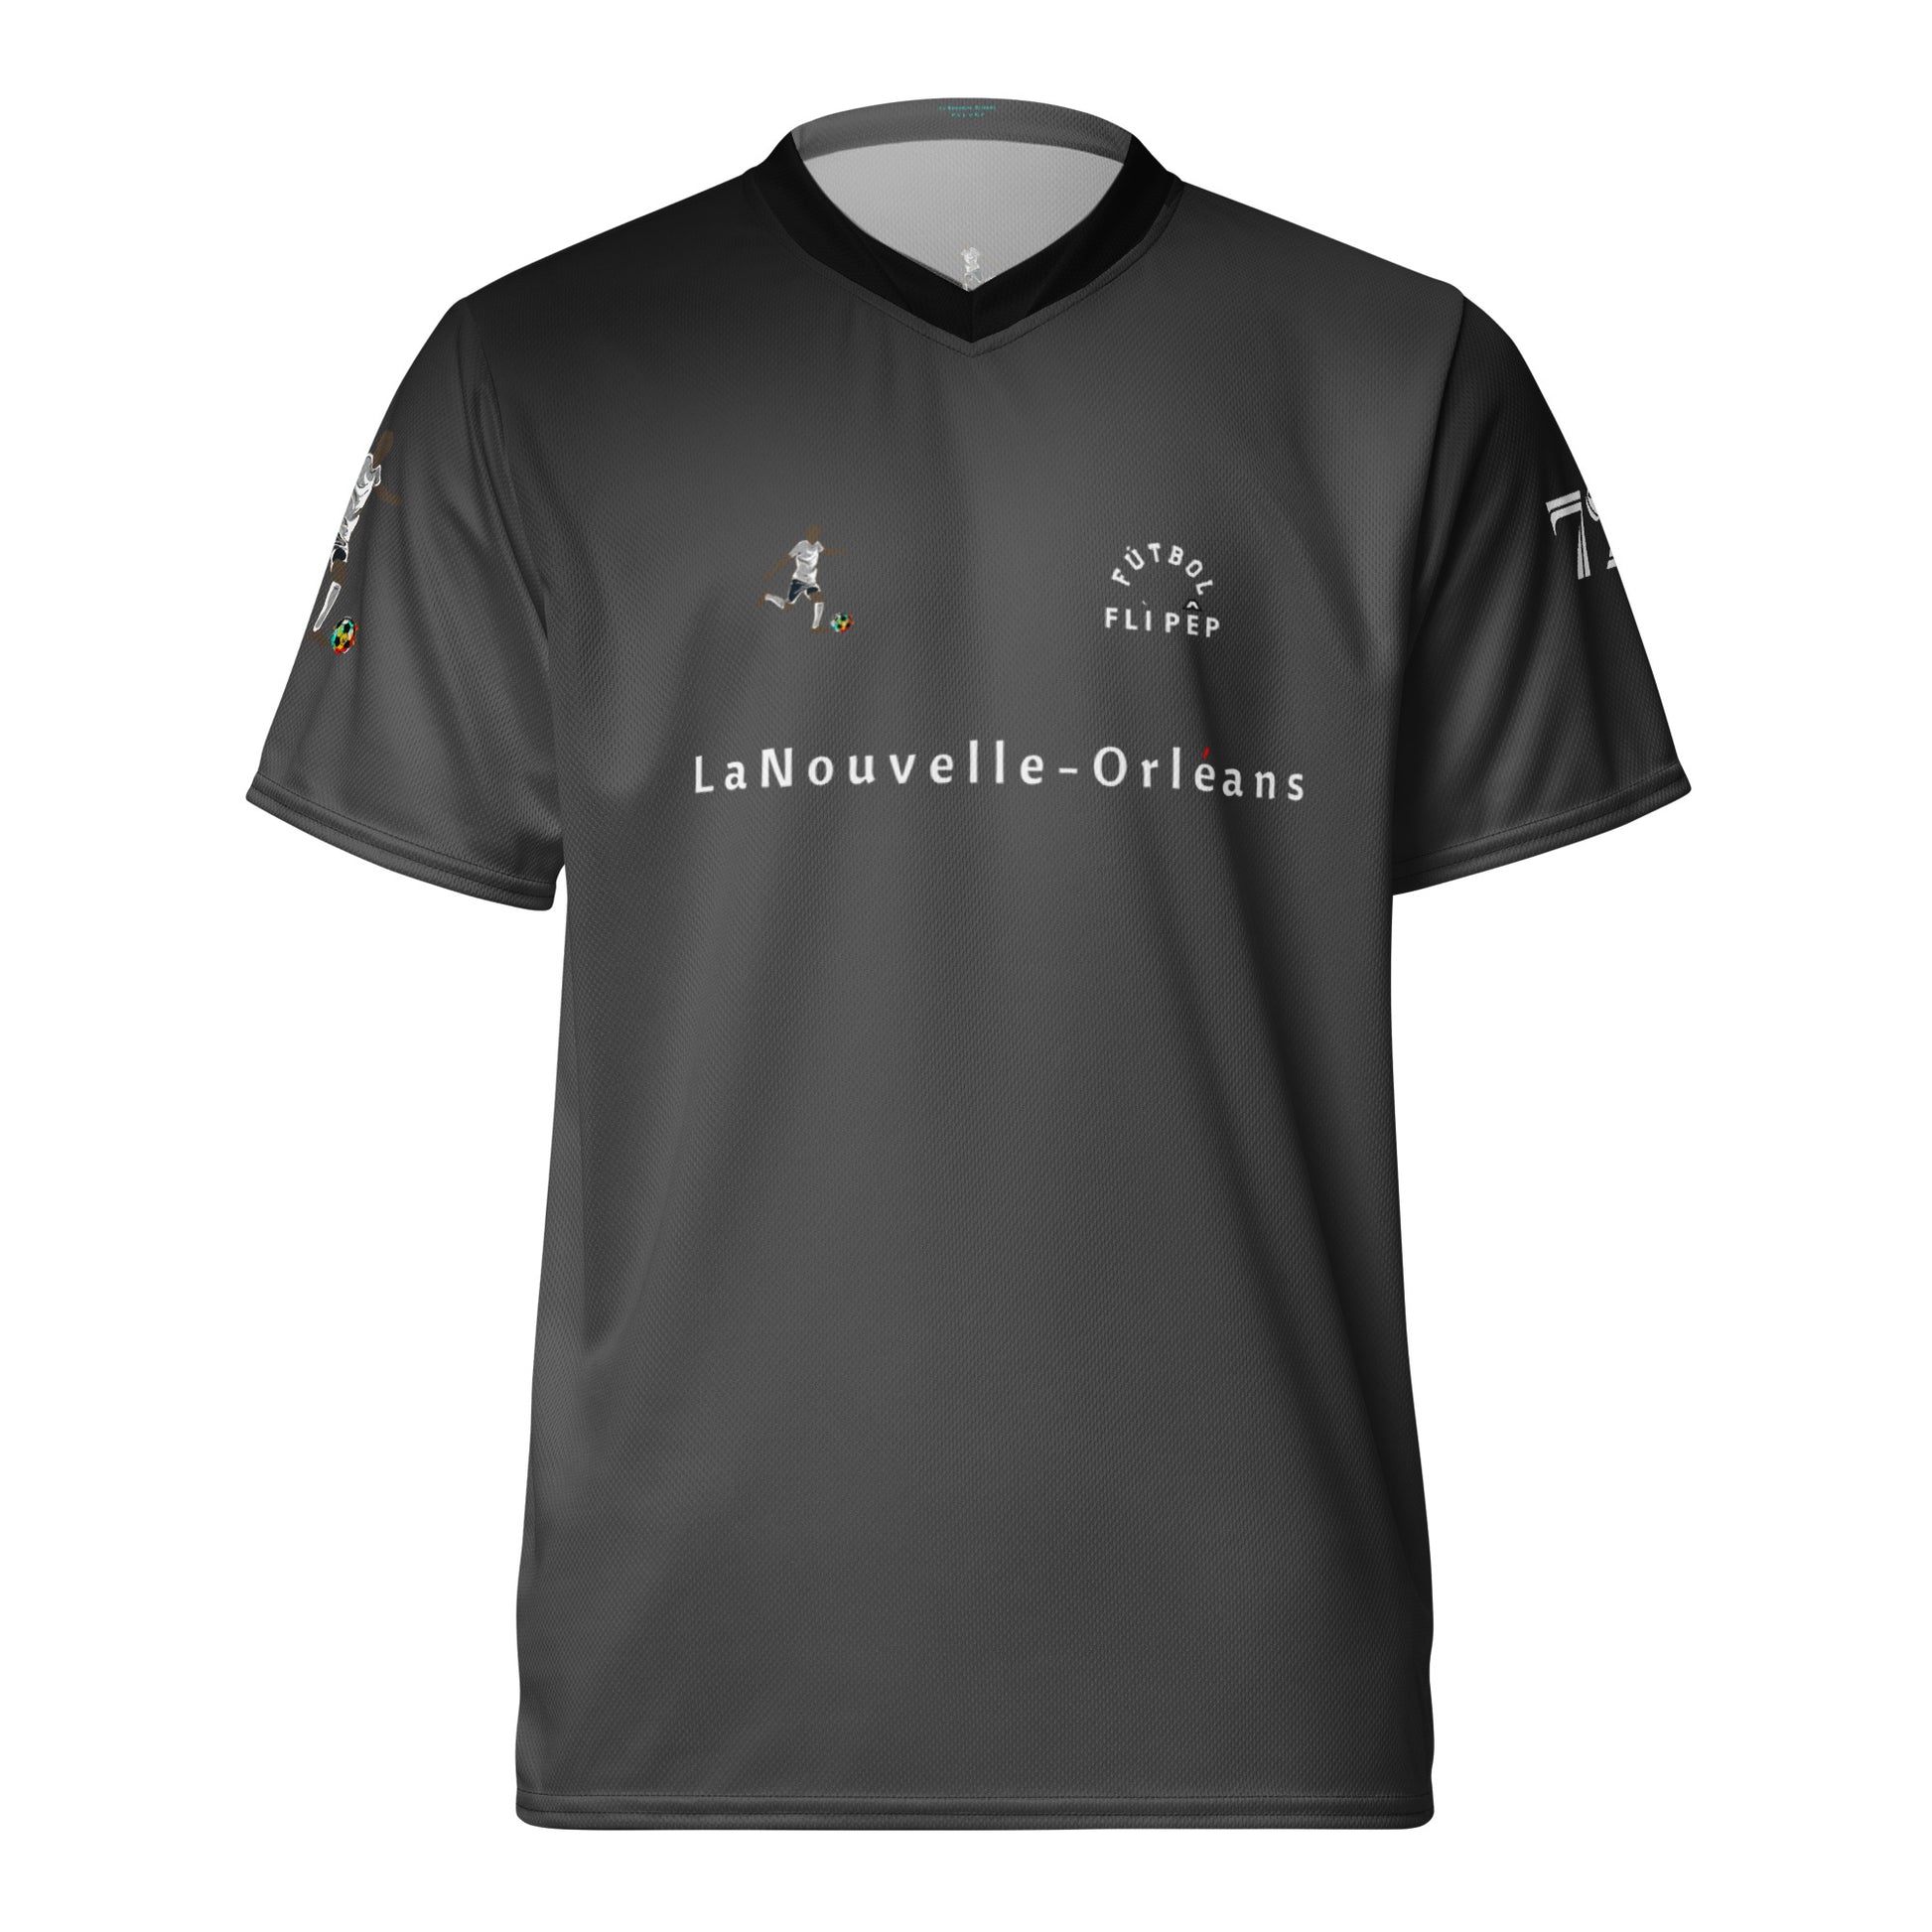 Smoke Grey Futebol Jersey - FLÌ PÊP™